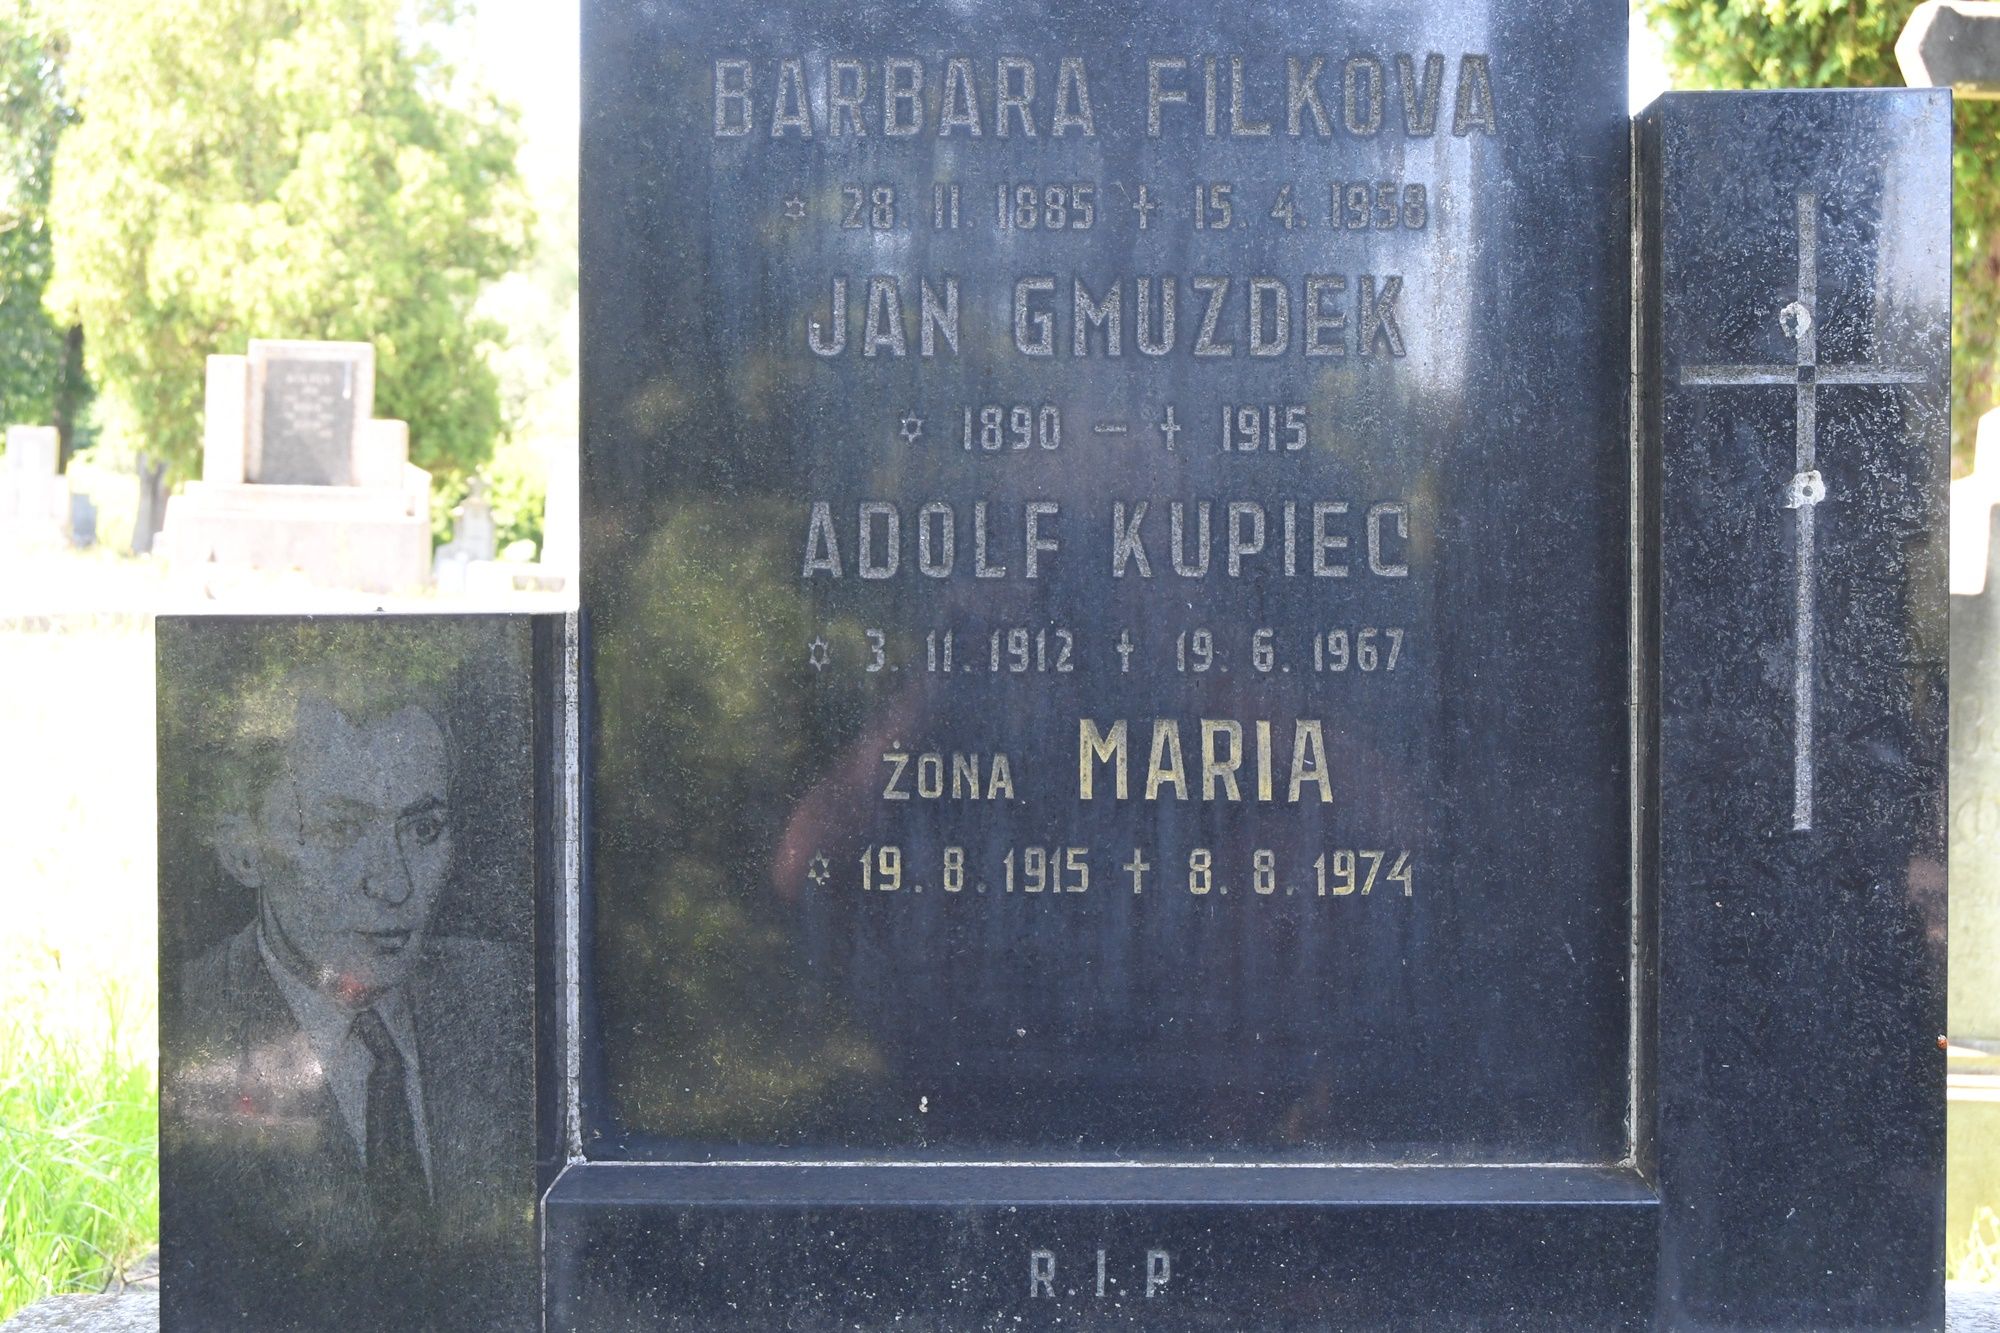 Fotografia przedstawiająca Nagrobek rodziny Filkova, Gmuzdek i Kupiec